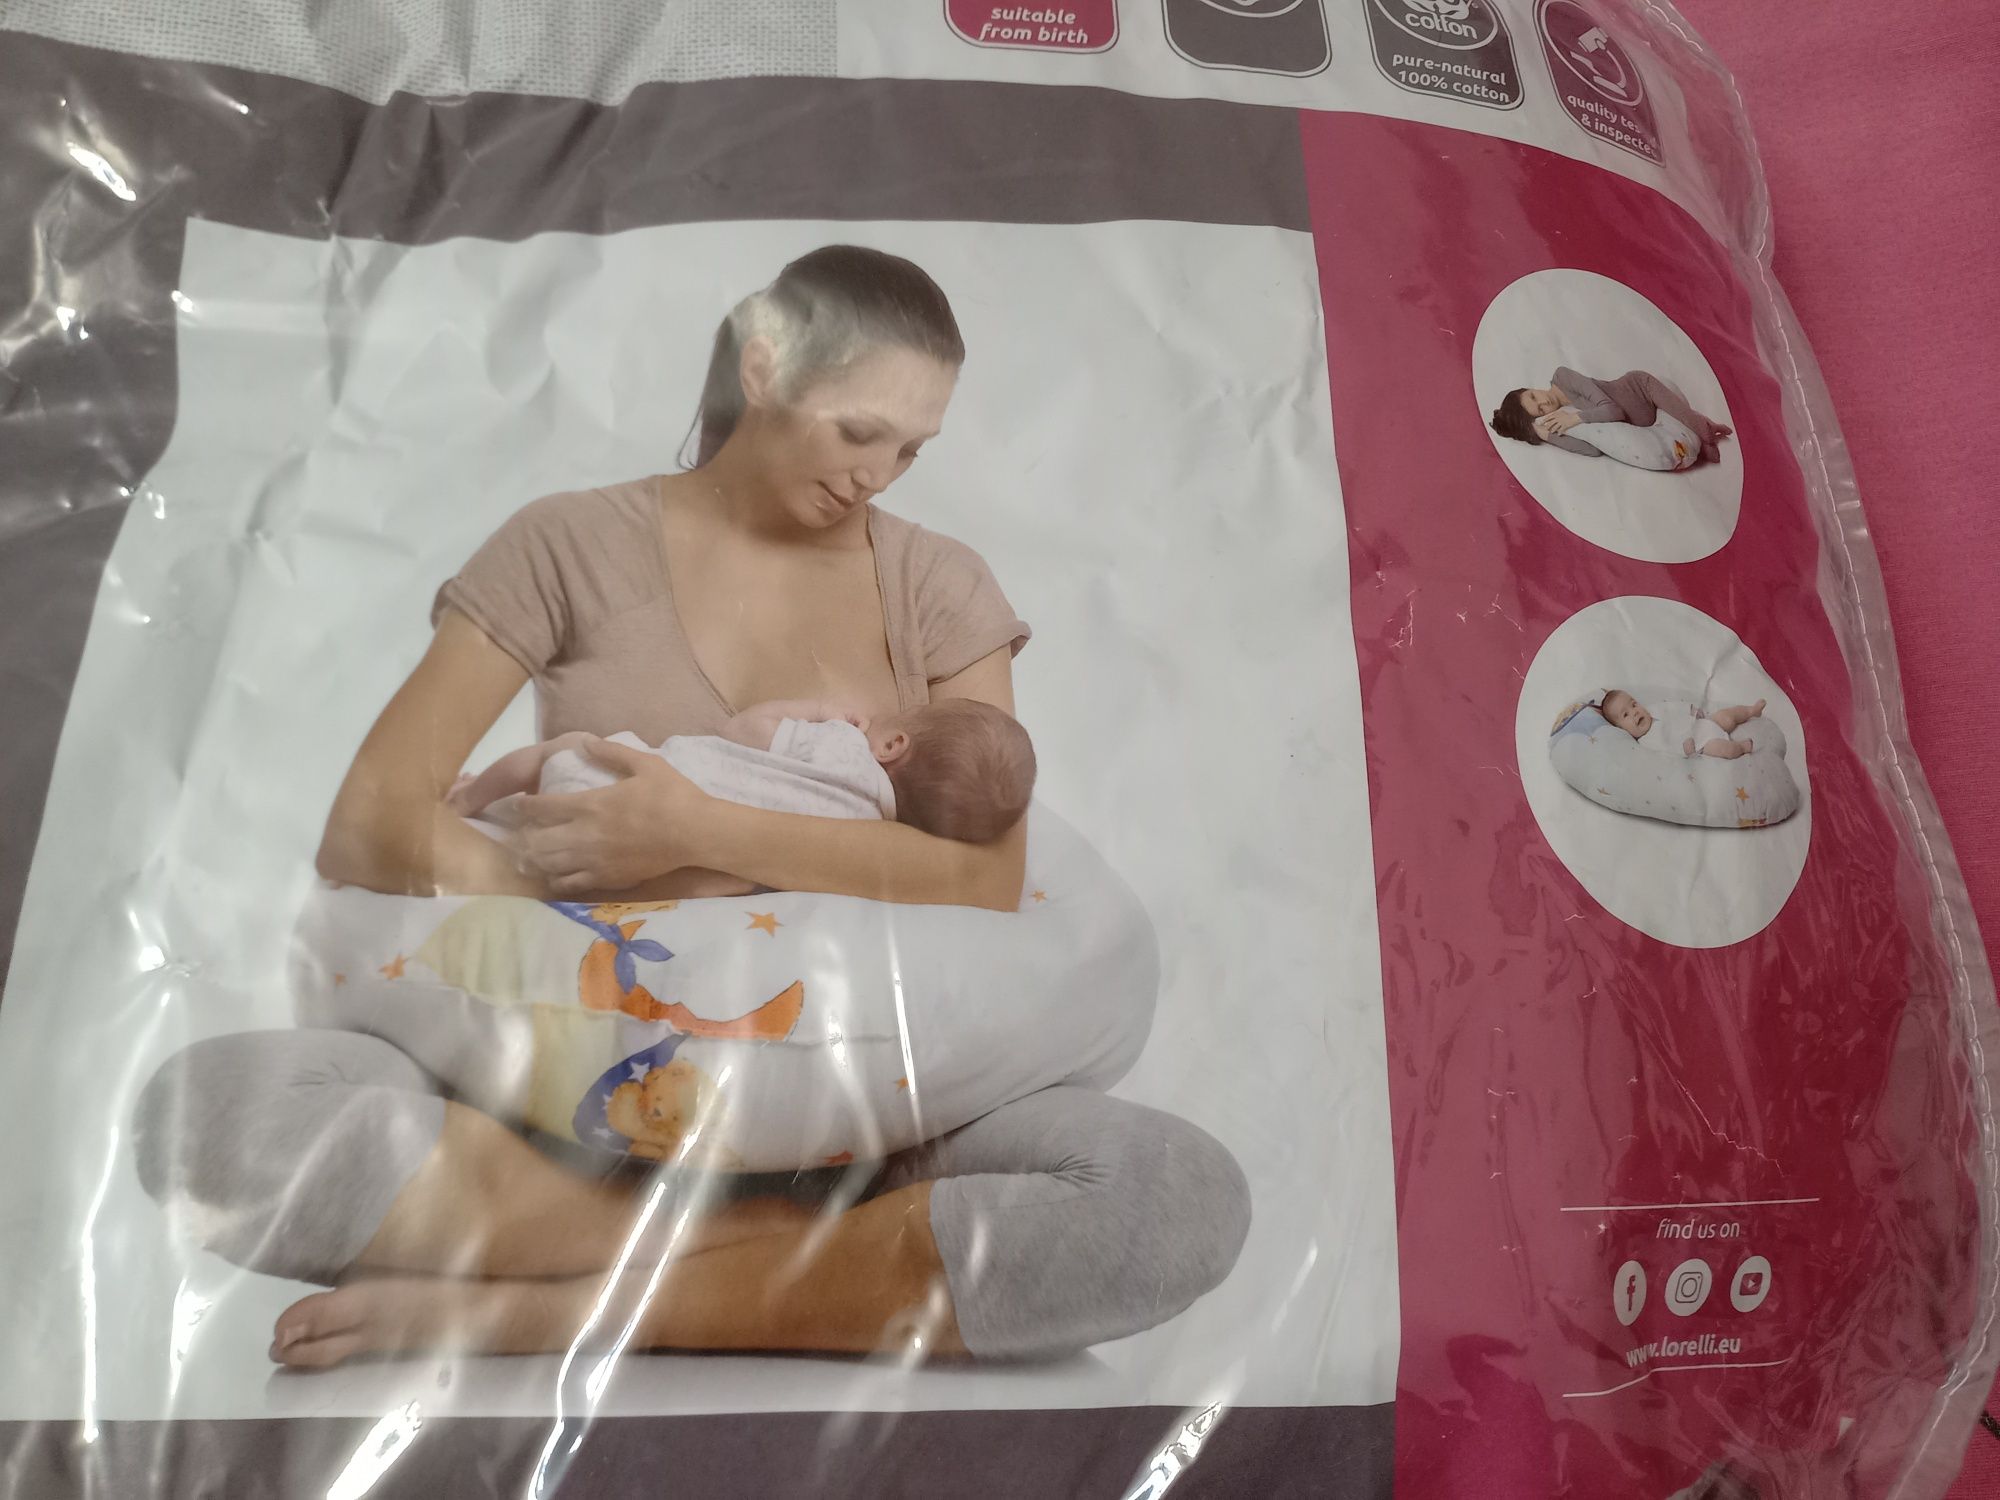 Almofada de amamentação (nova)

Ideal para amamentar o bebe, da para c